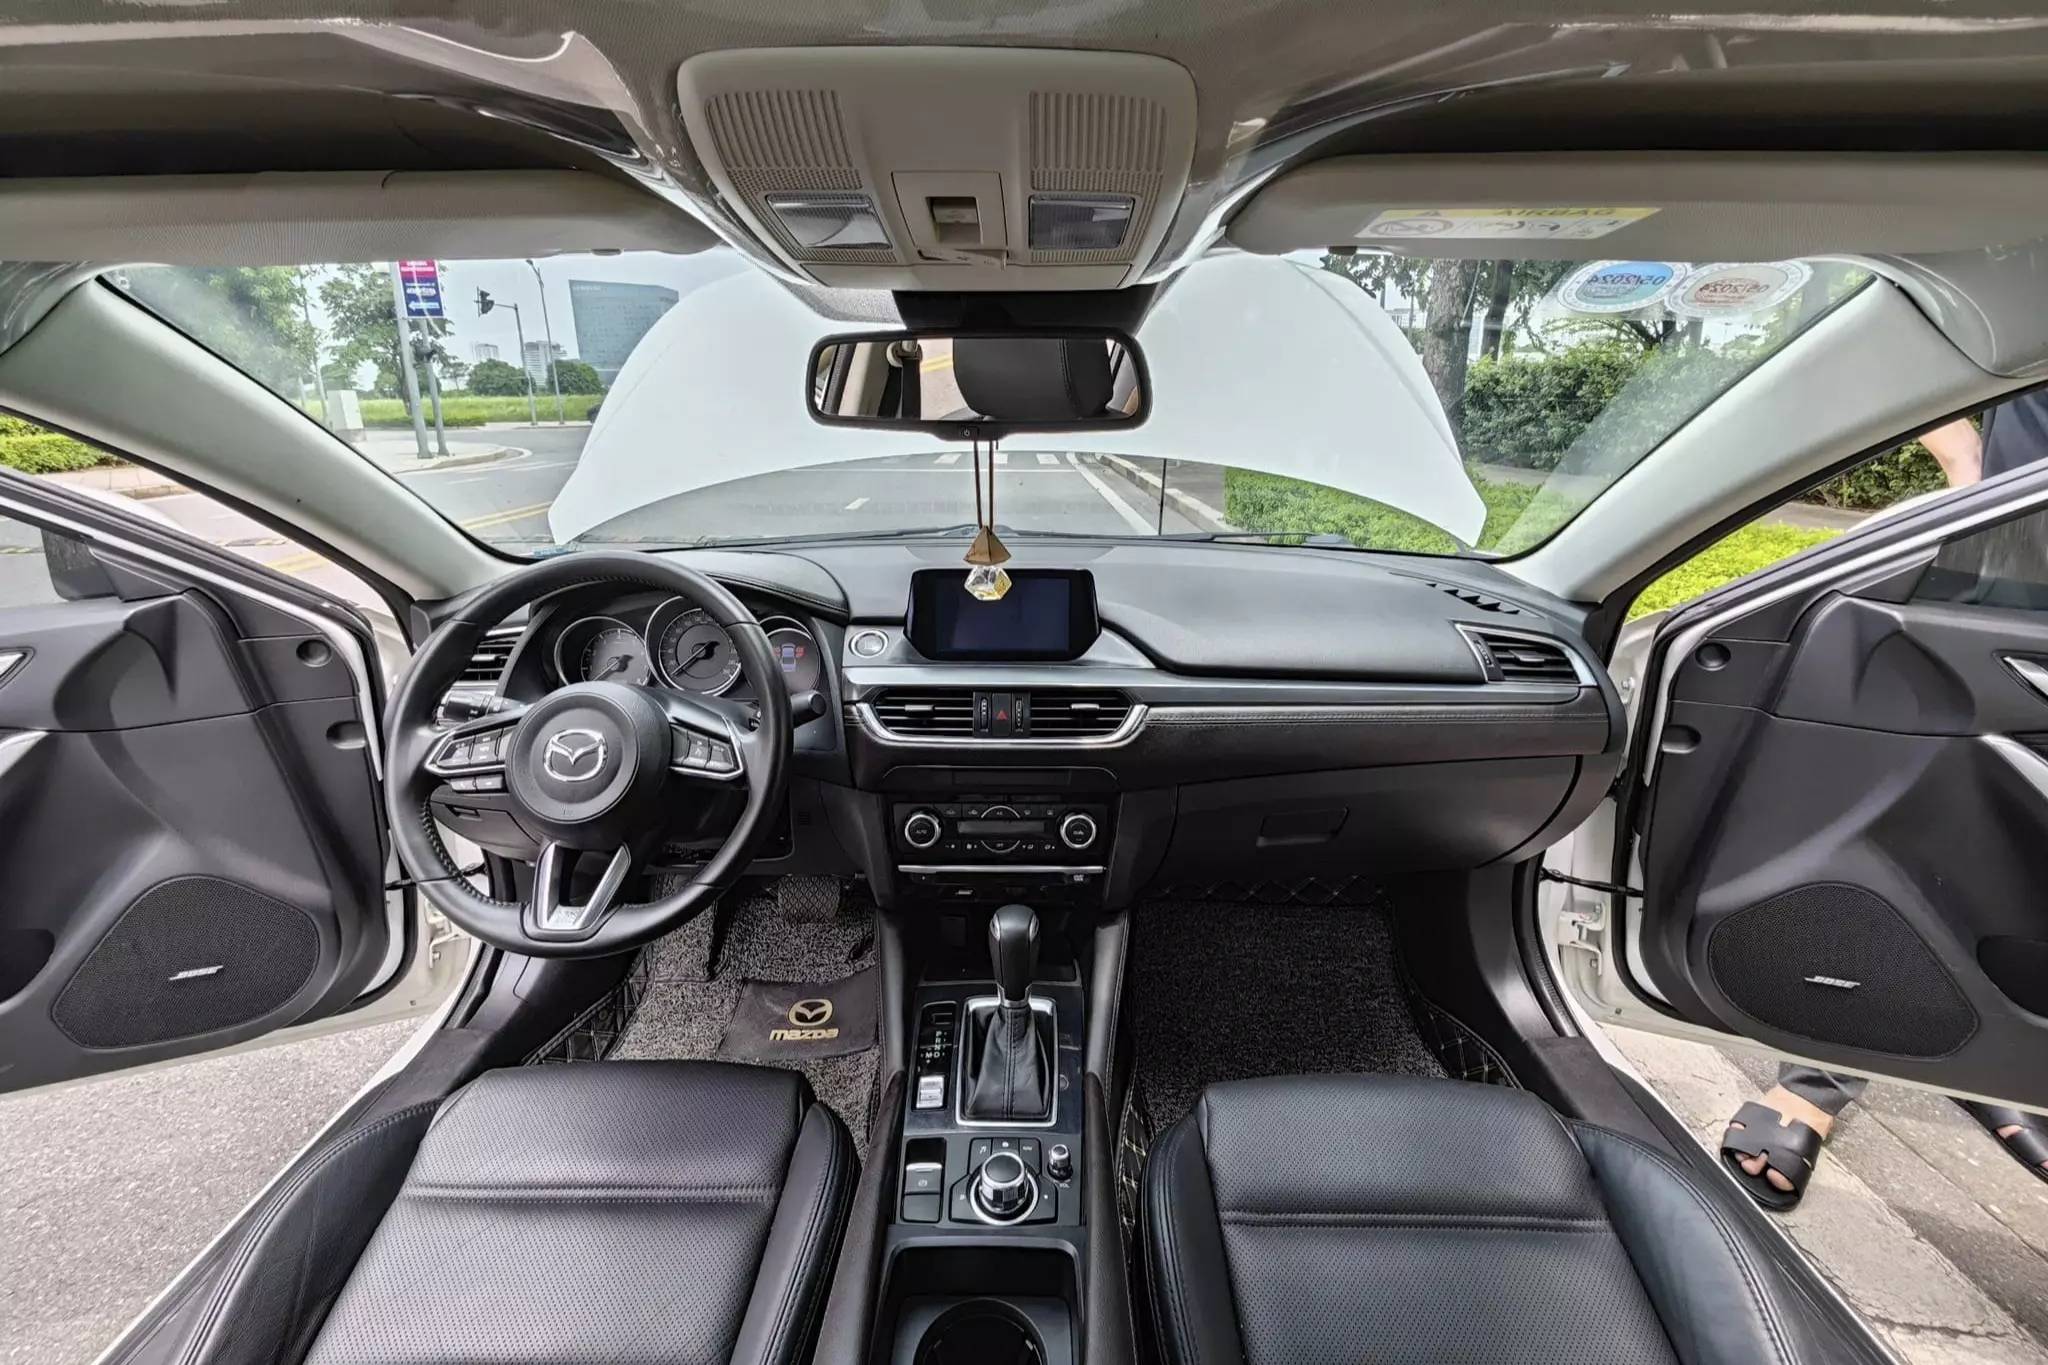 Mazda6 cũ đời 2018 giá 580 triệu đồng, có nên mua thời điểm này? - 7